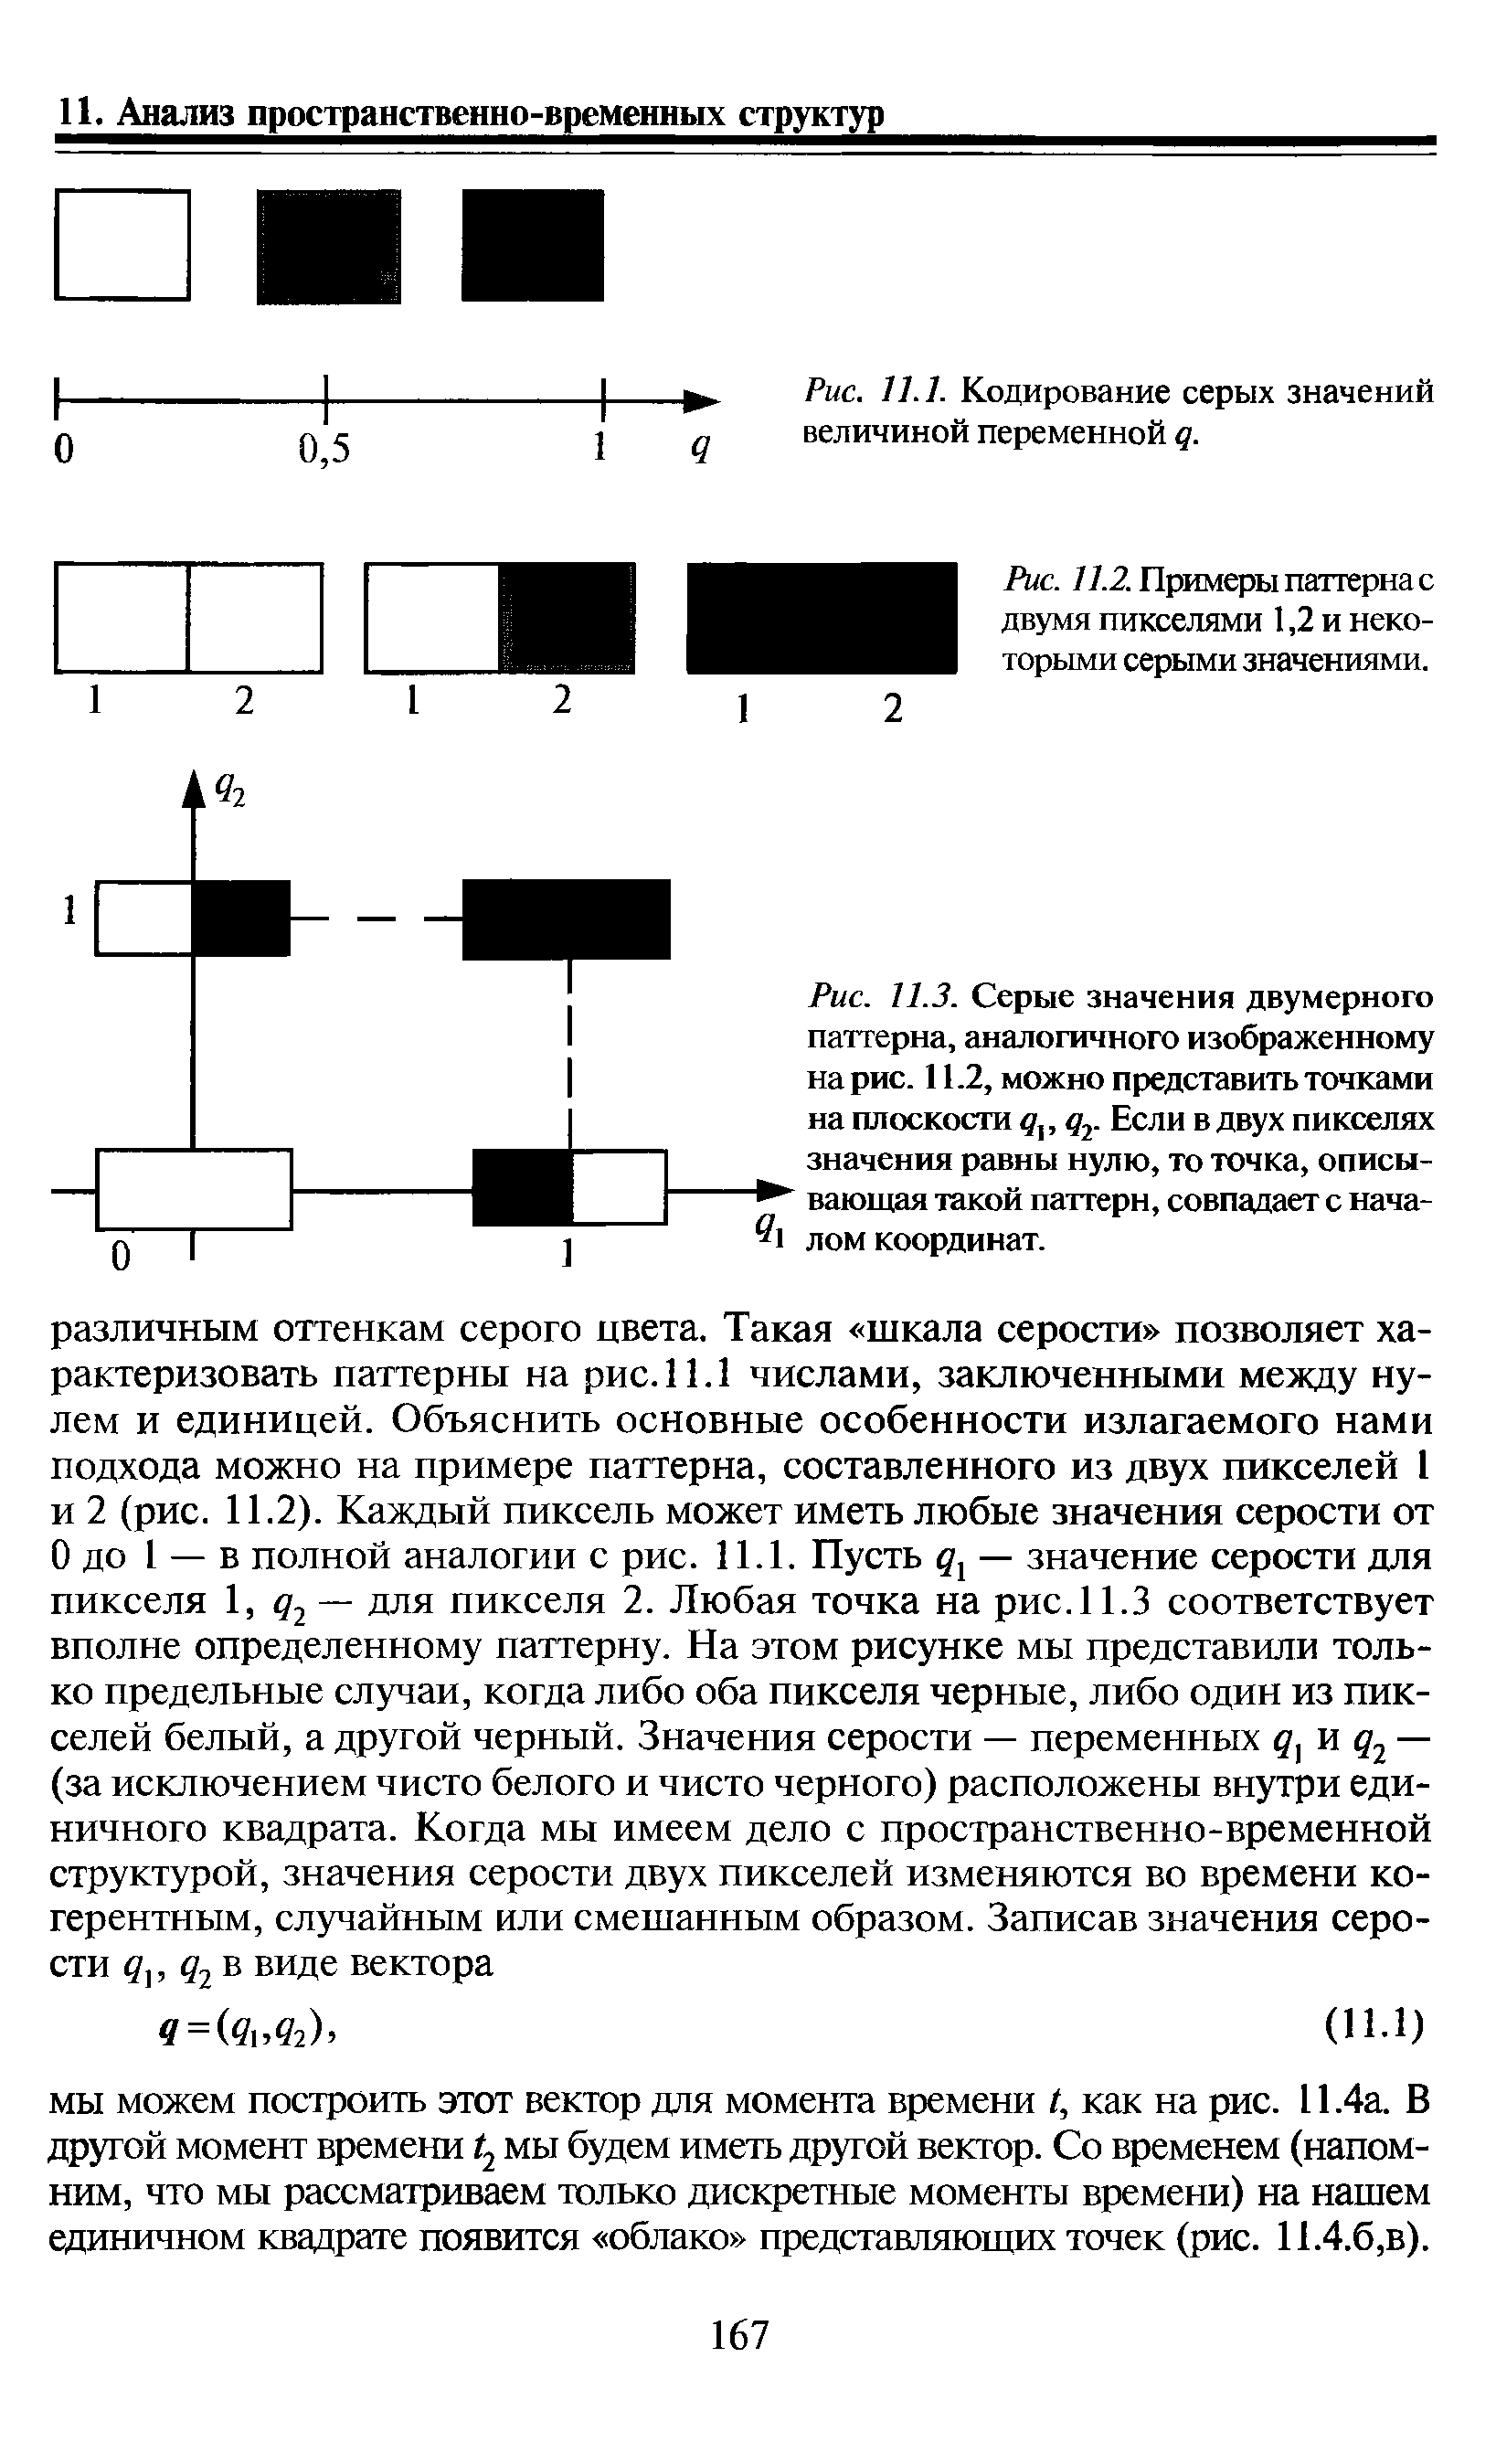 Рис. //.2. Примеры паттерна с двумя пикселями 1,2 и некоторыми серыми значениями.